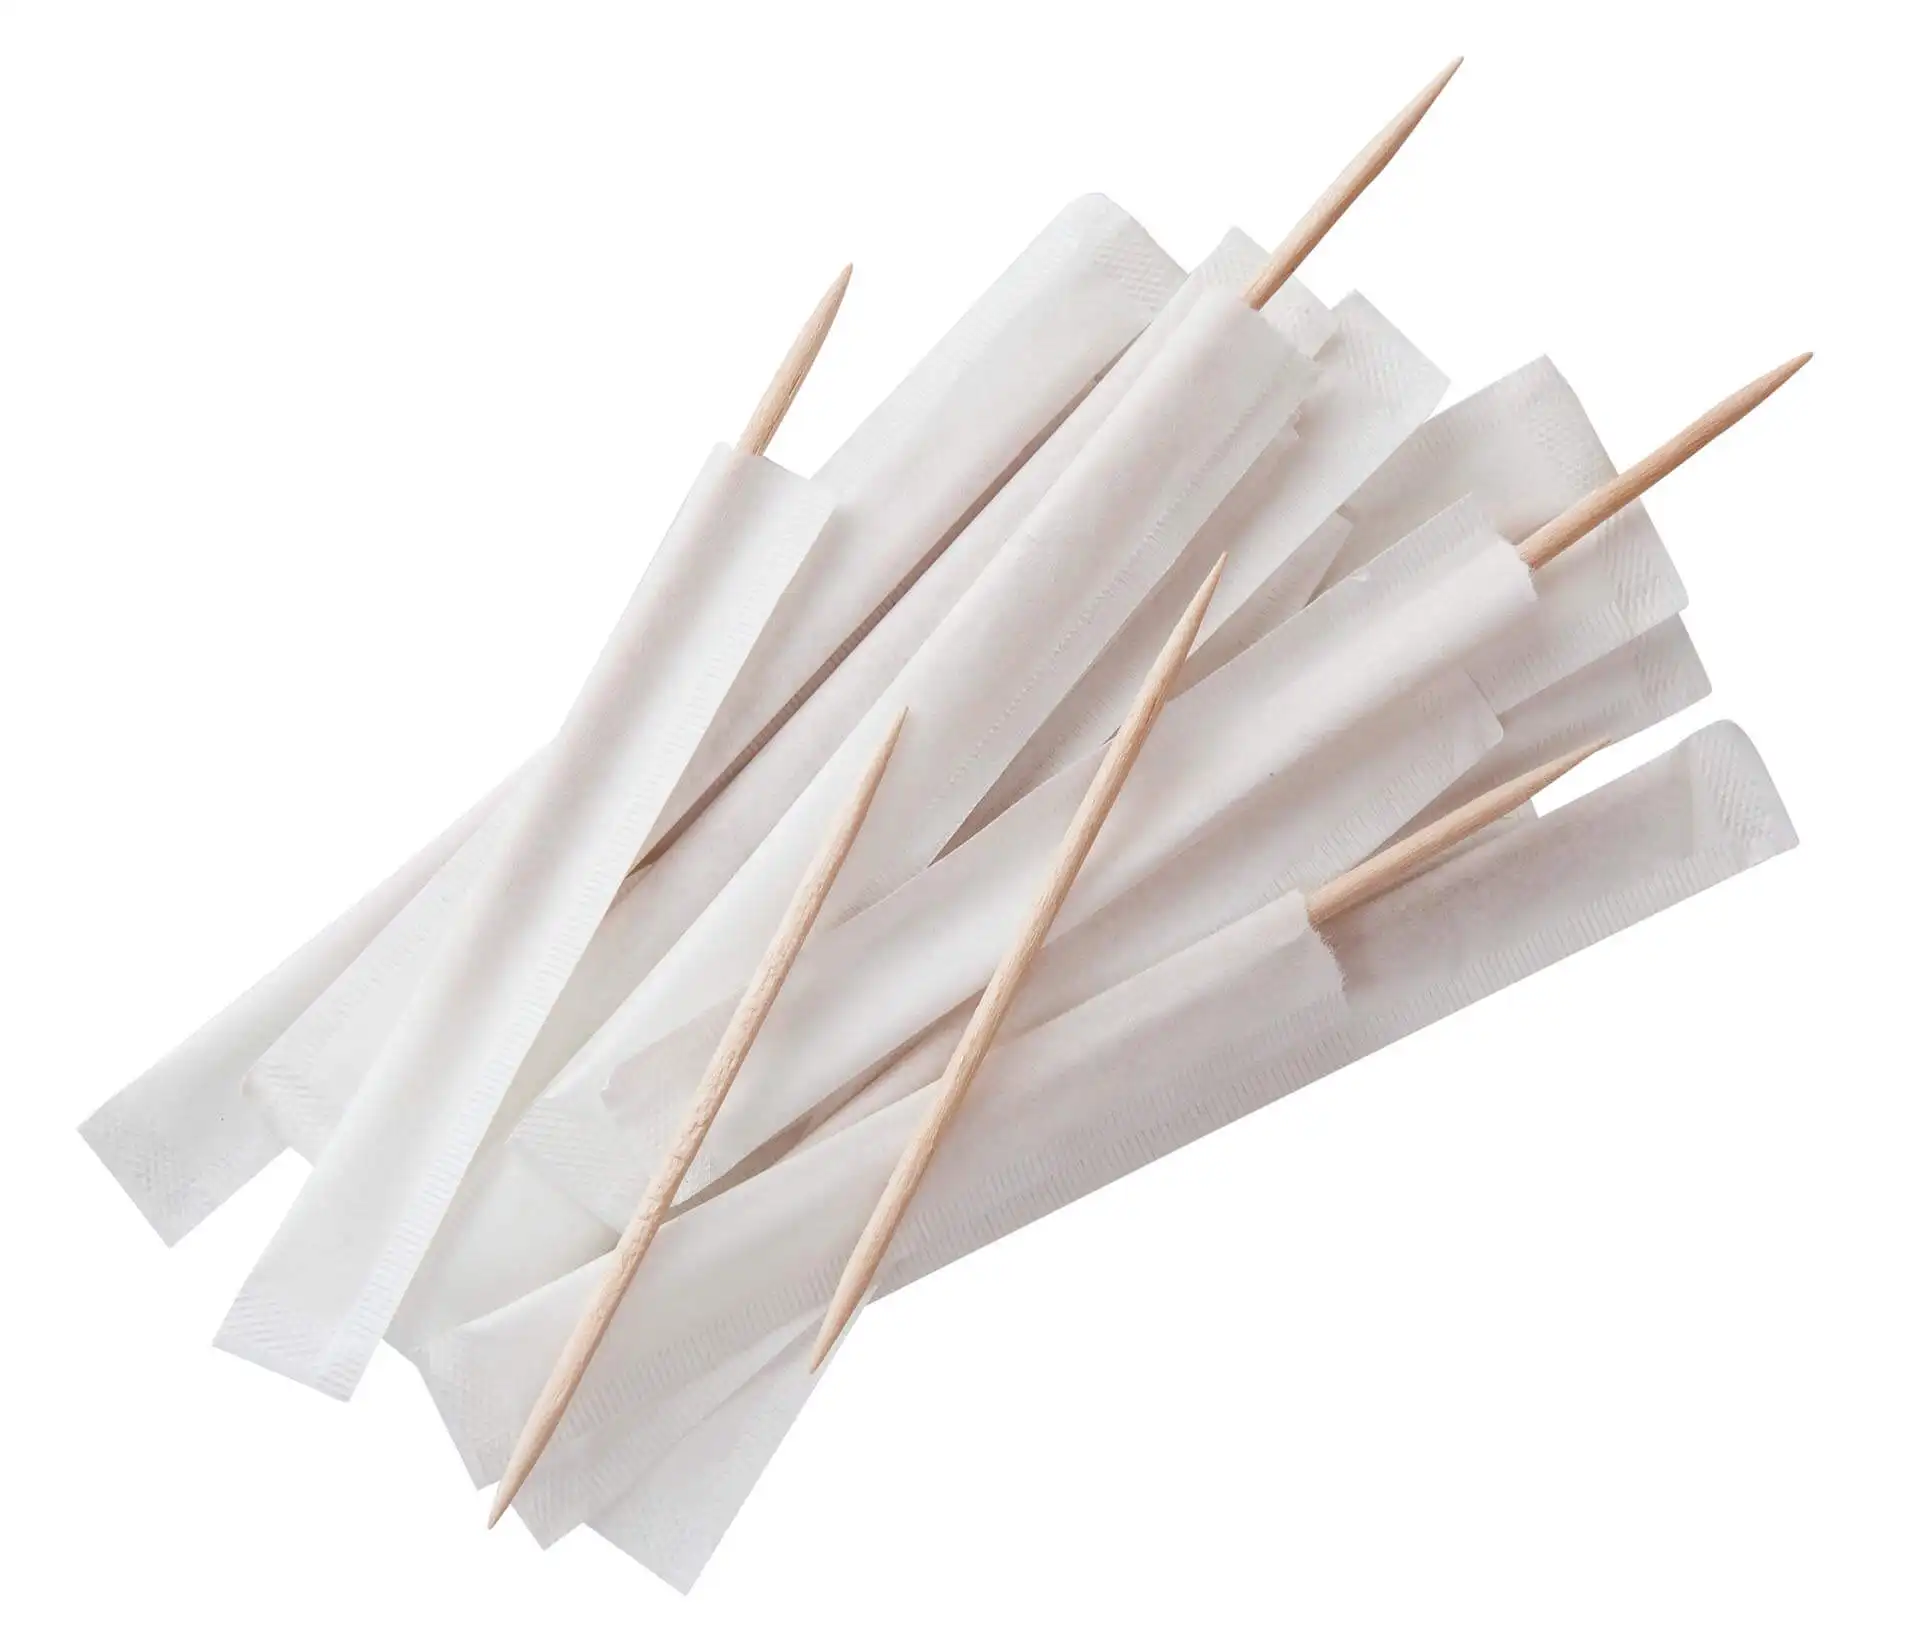 Involucro di carta stuzzicadenti individuale imballato stuzzicadenti di bambù diametro 2.0 millimetri stuzzicadenti all'ingrosso